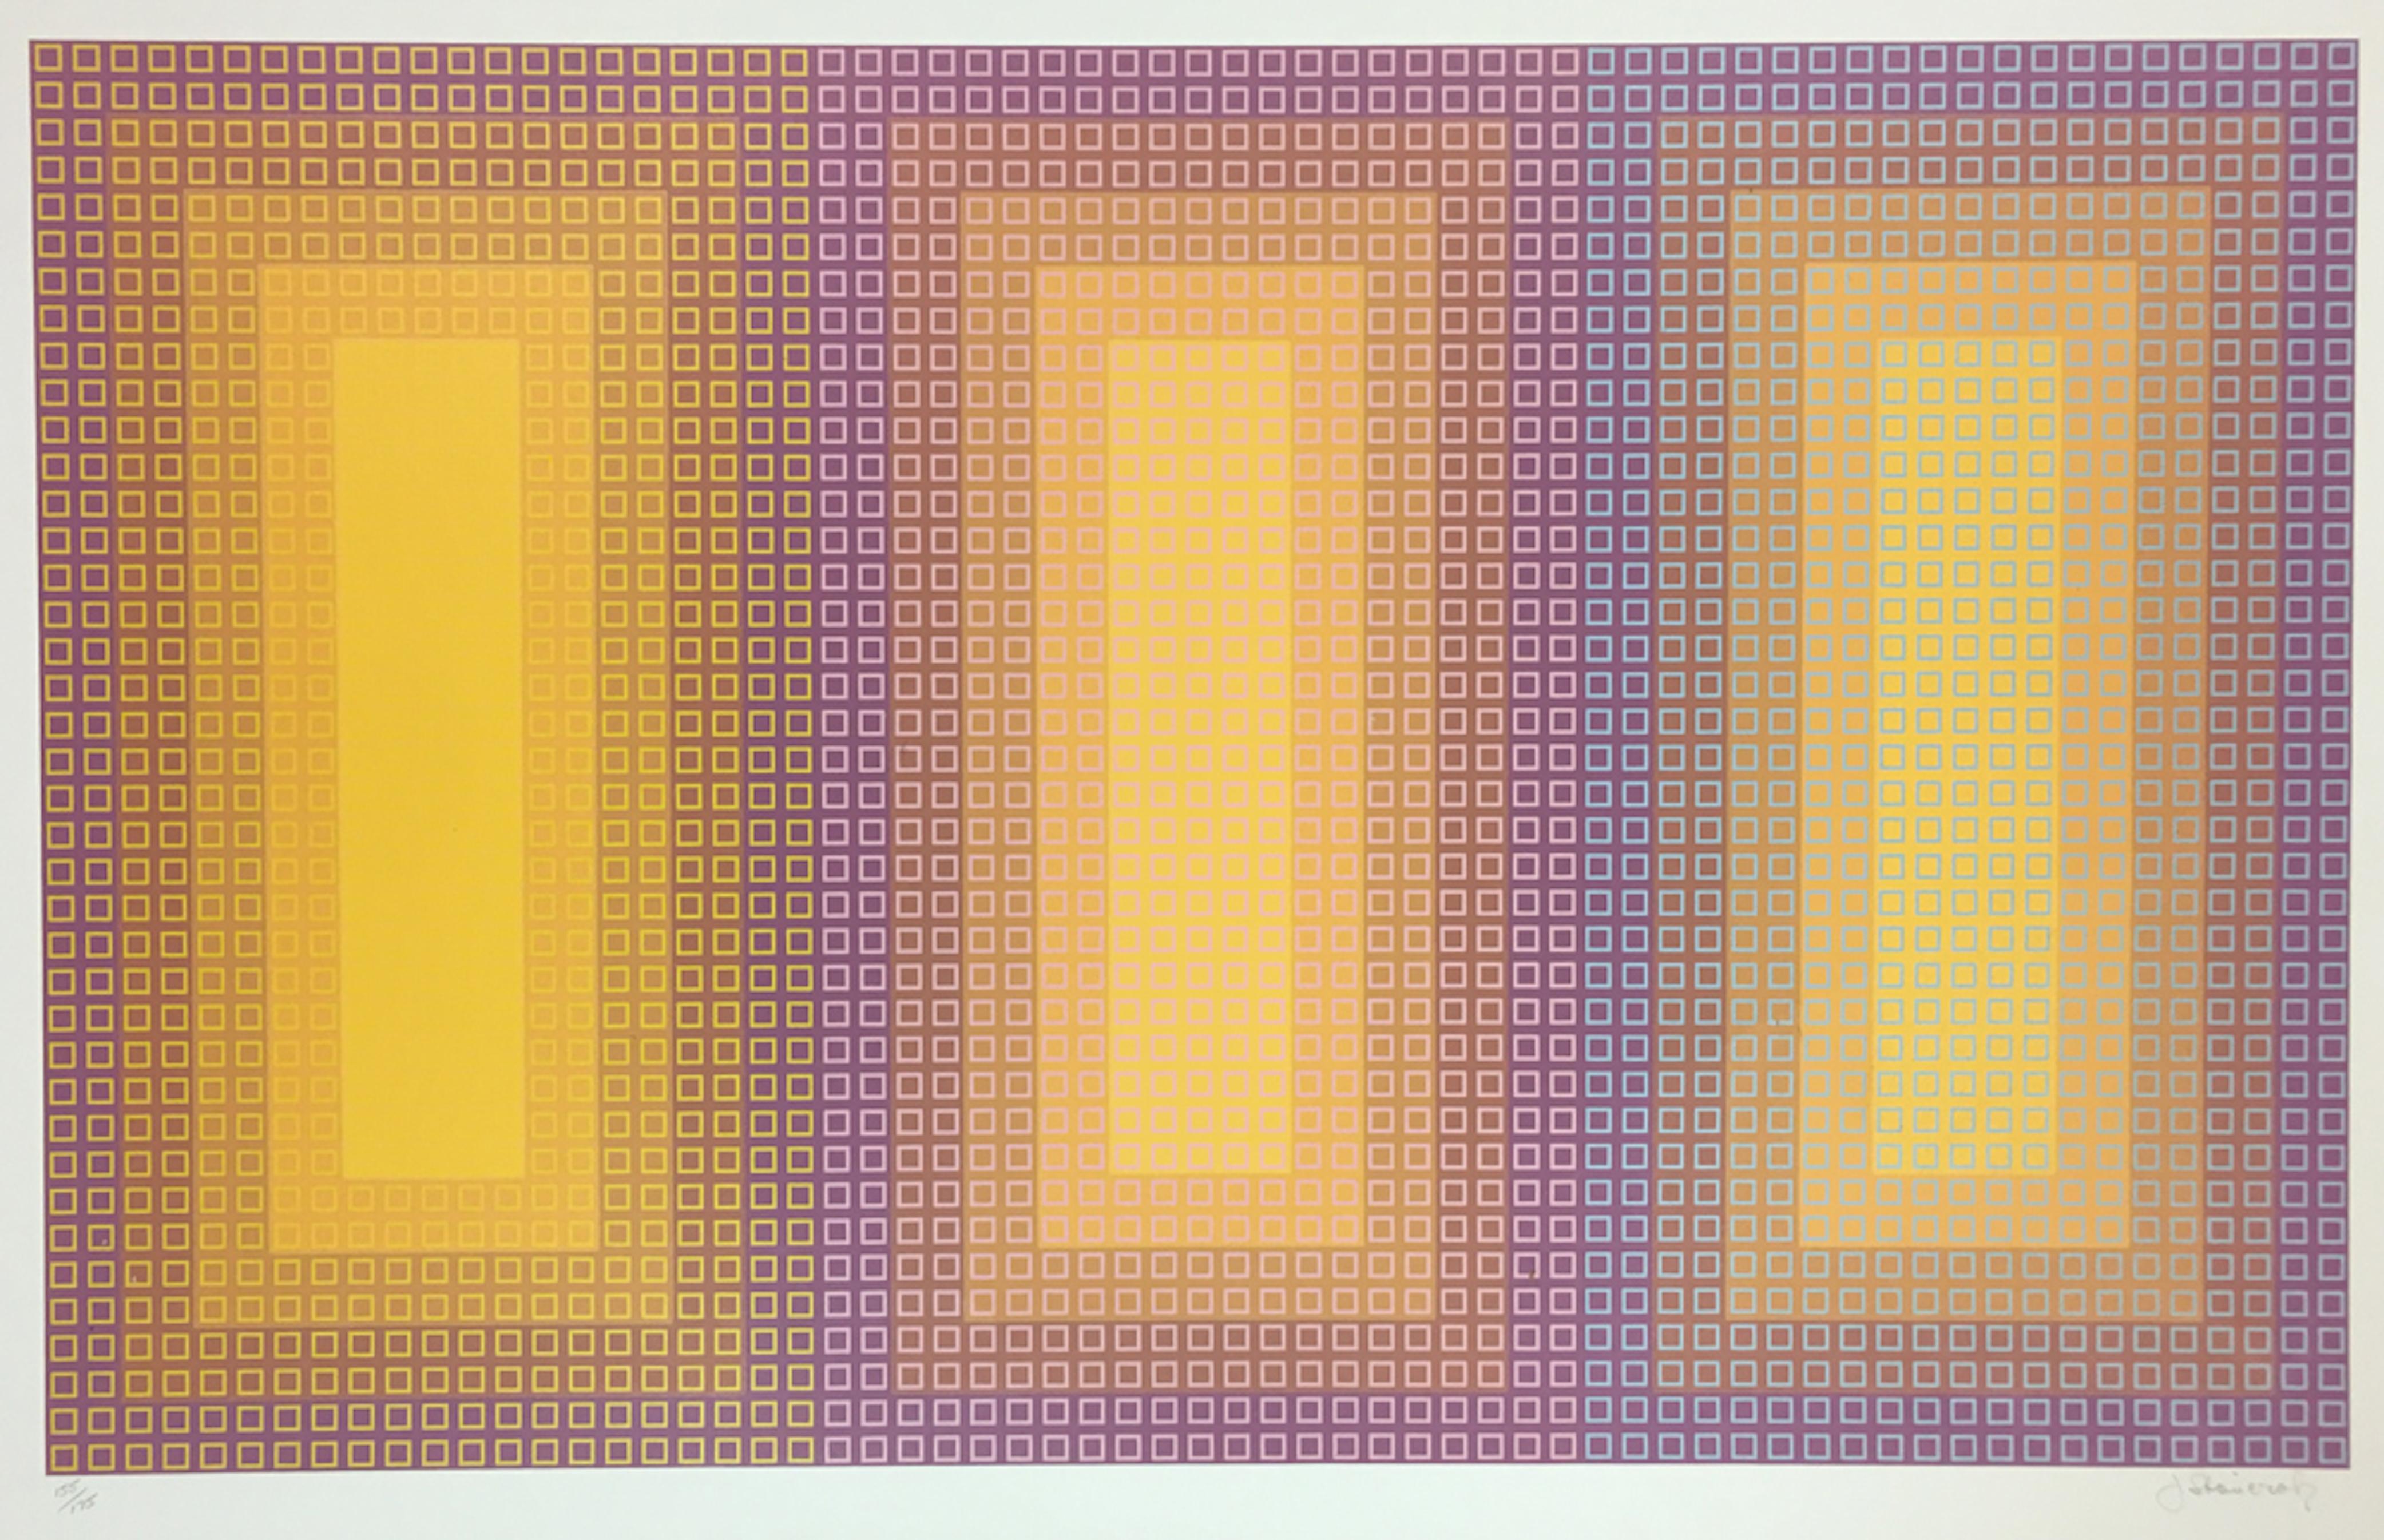 Abstract Print Julian Stanczak - temporaire de trois  1981  Sérigraphie  26 x 39 1/4 po.  Édition de 175 exemplaires